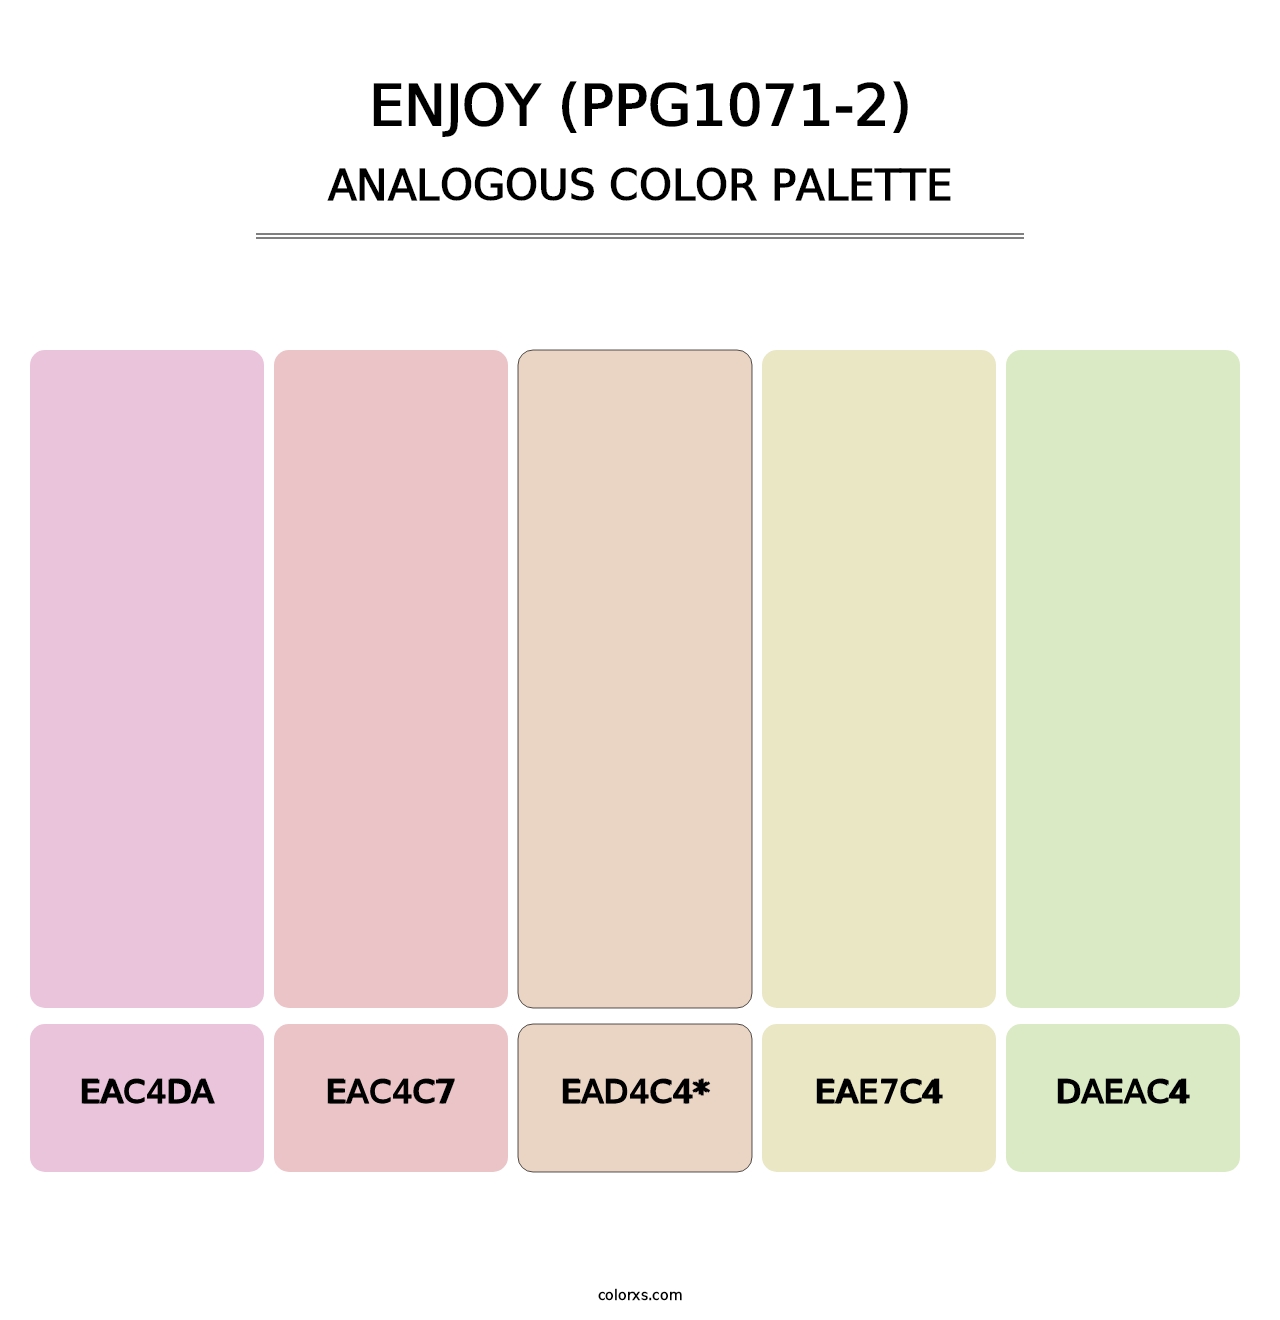 Enjoy (PPG1071-2) - Analogous Color Palette